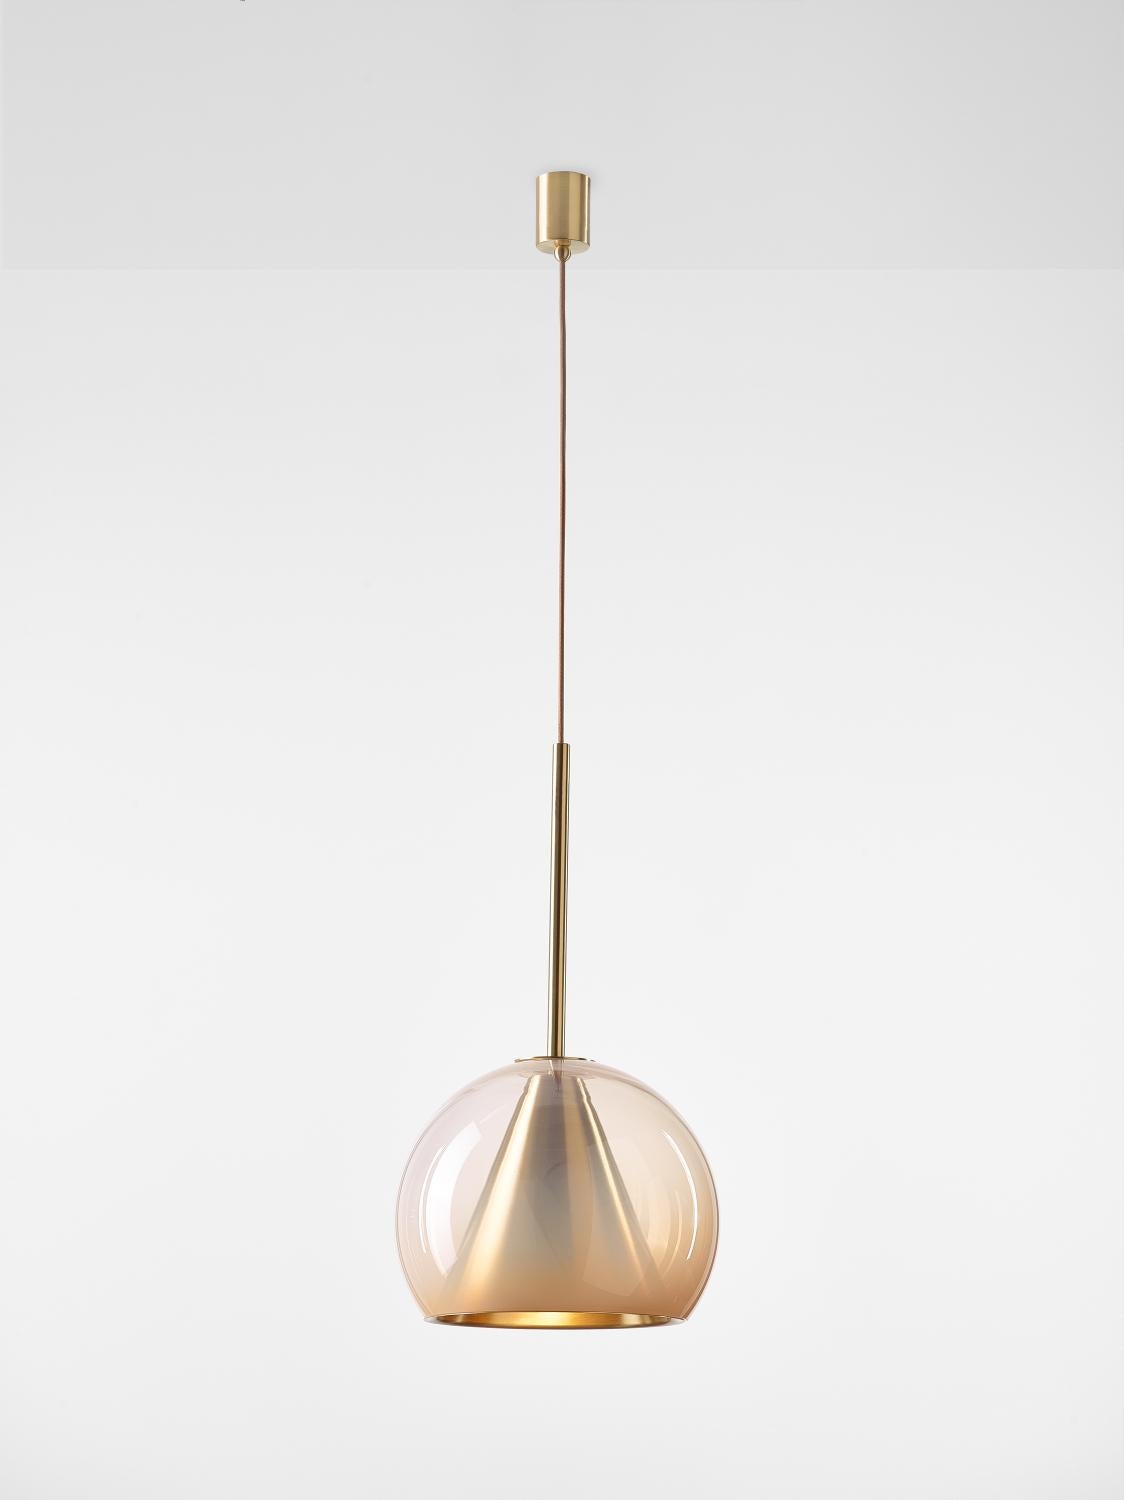 Grande lampe à suspension Kono couleur chair neutre par Dechem Studio
Dimensions : D 35 x H 75 cm
Matériaux : laiton, verre.
Également disponible : différentes finitions et couleurs.

Cette collection de luminaires suspendus associe les formes